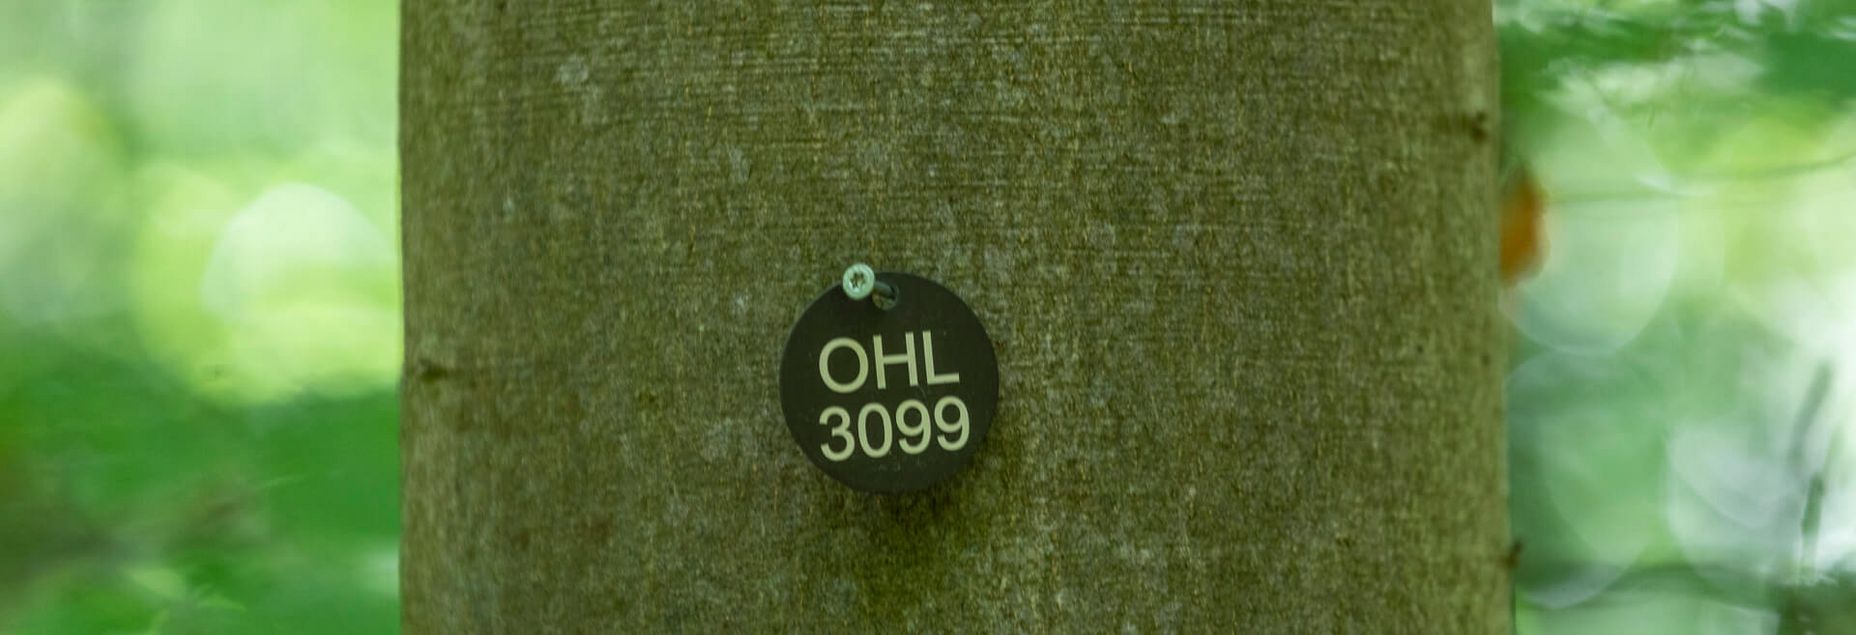 FriedWald-Onlineshop OHL 3099